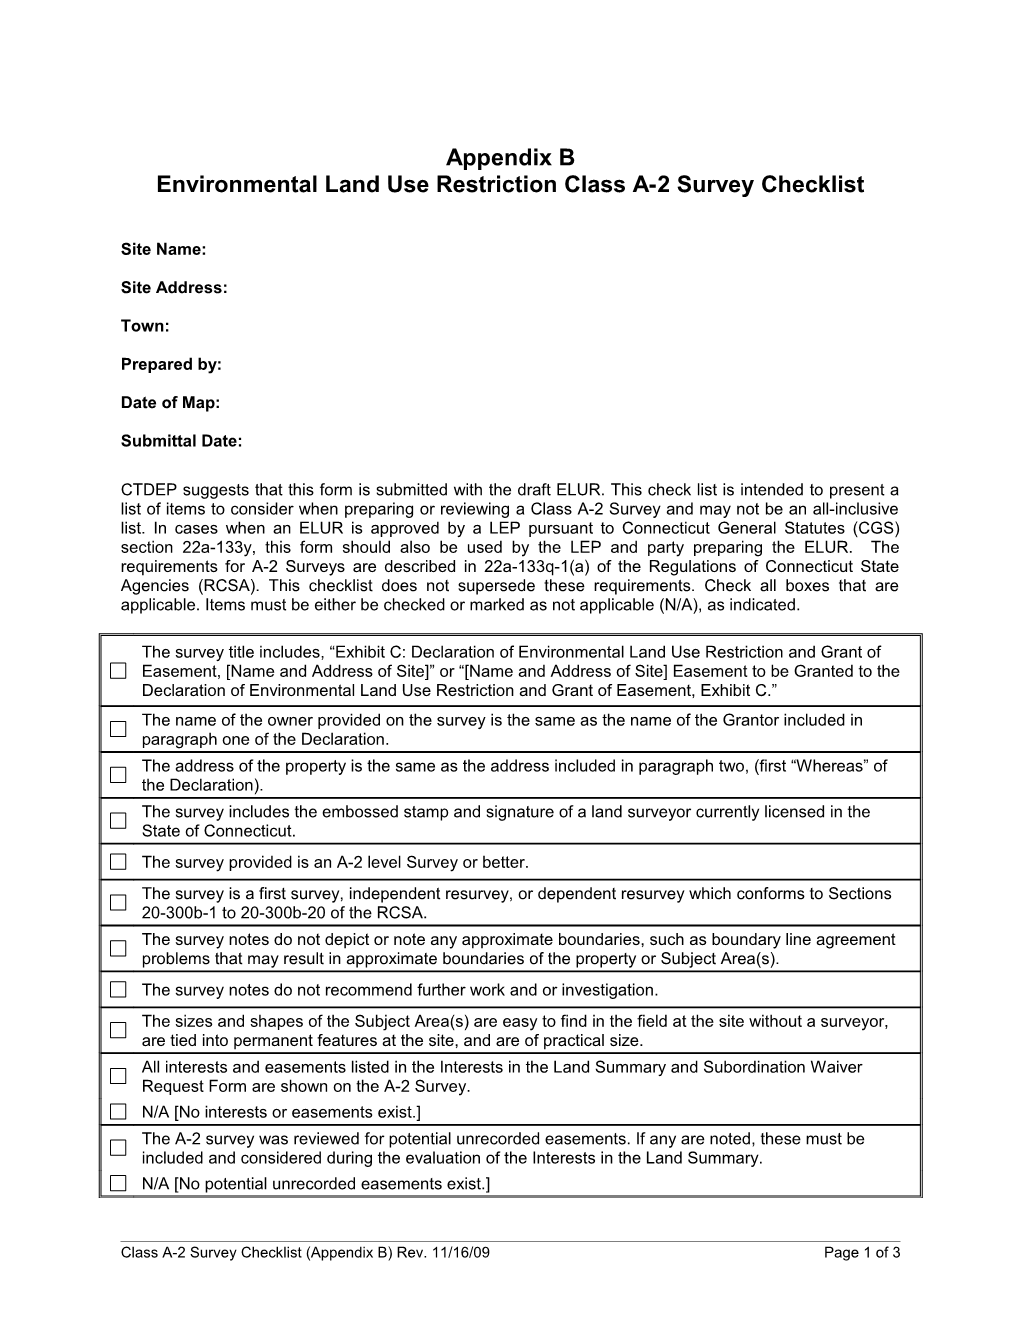 Class A-2 Survey Checklist Appendix B